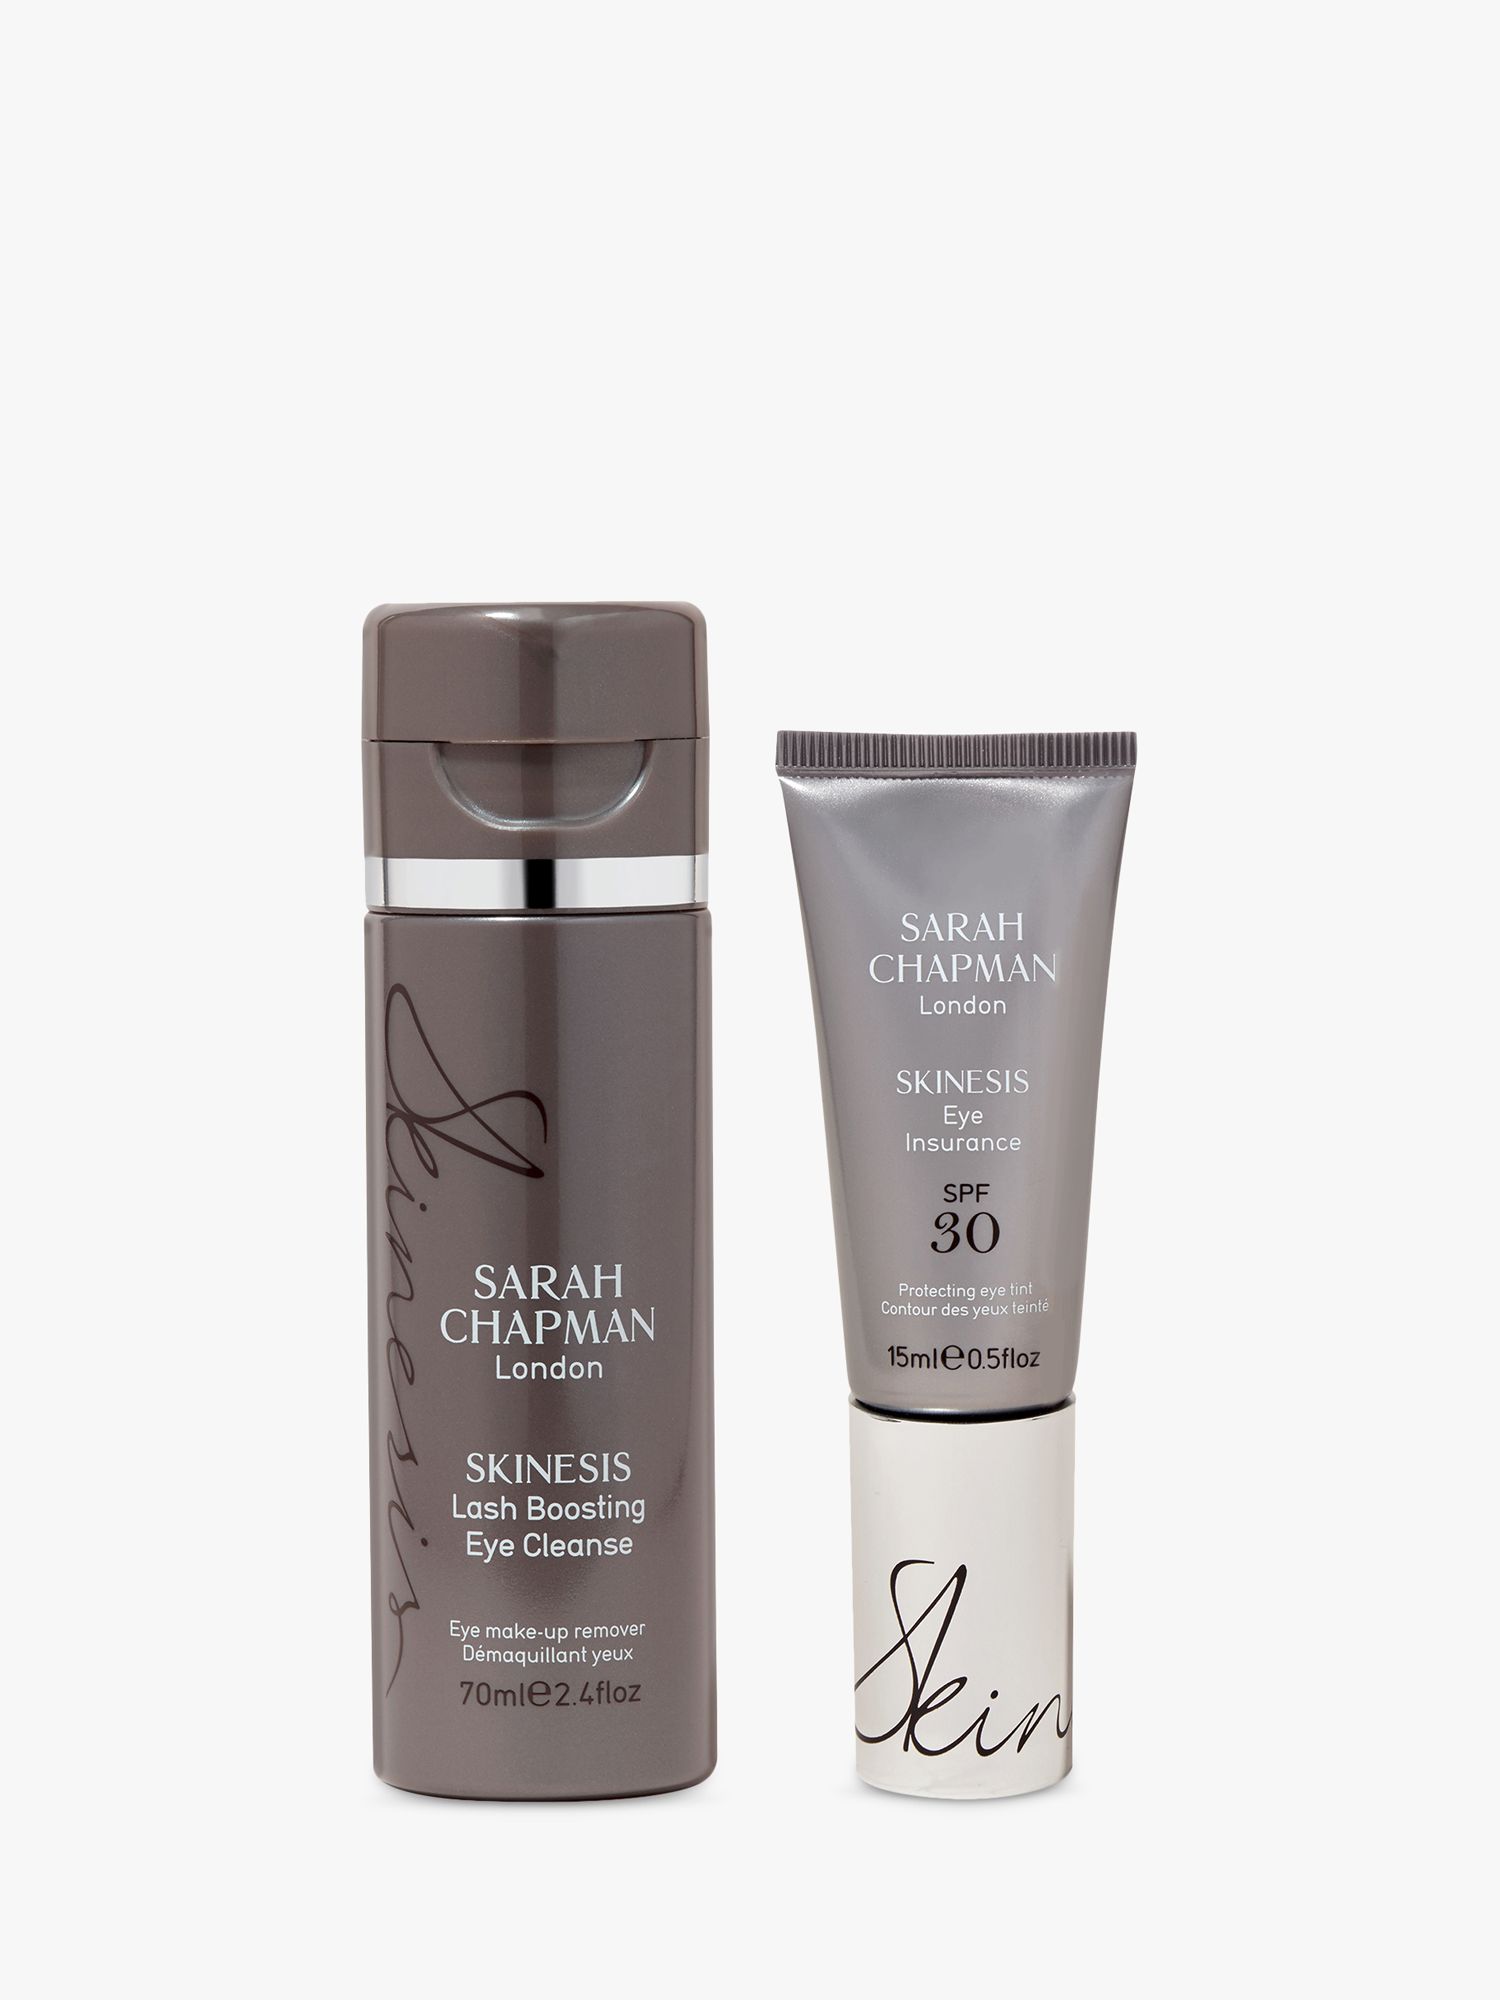 Sarah Chapman Eye Revival Duo Skincare Gift Set 1